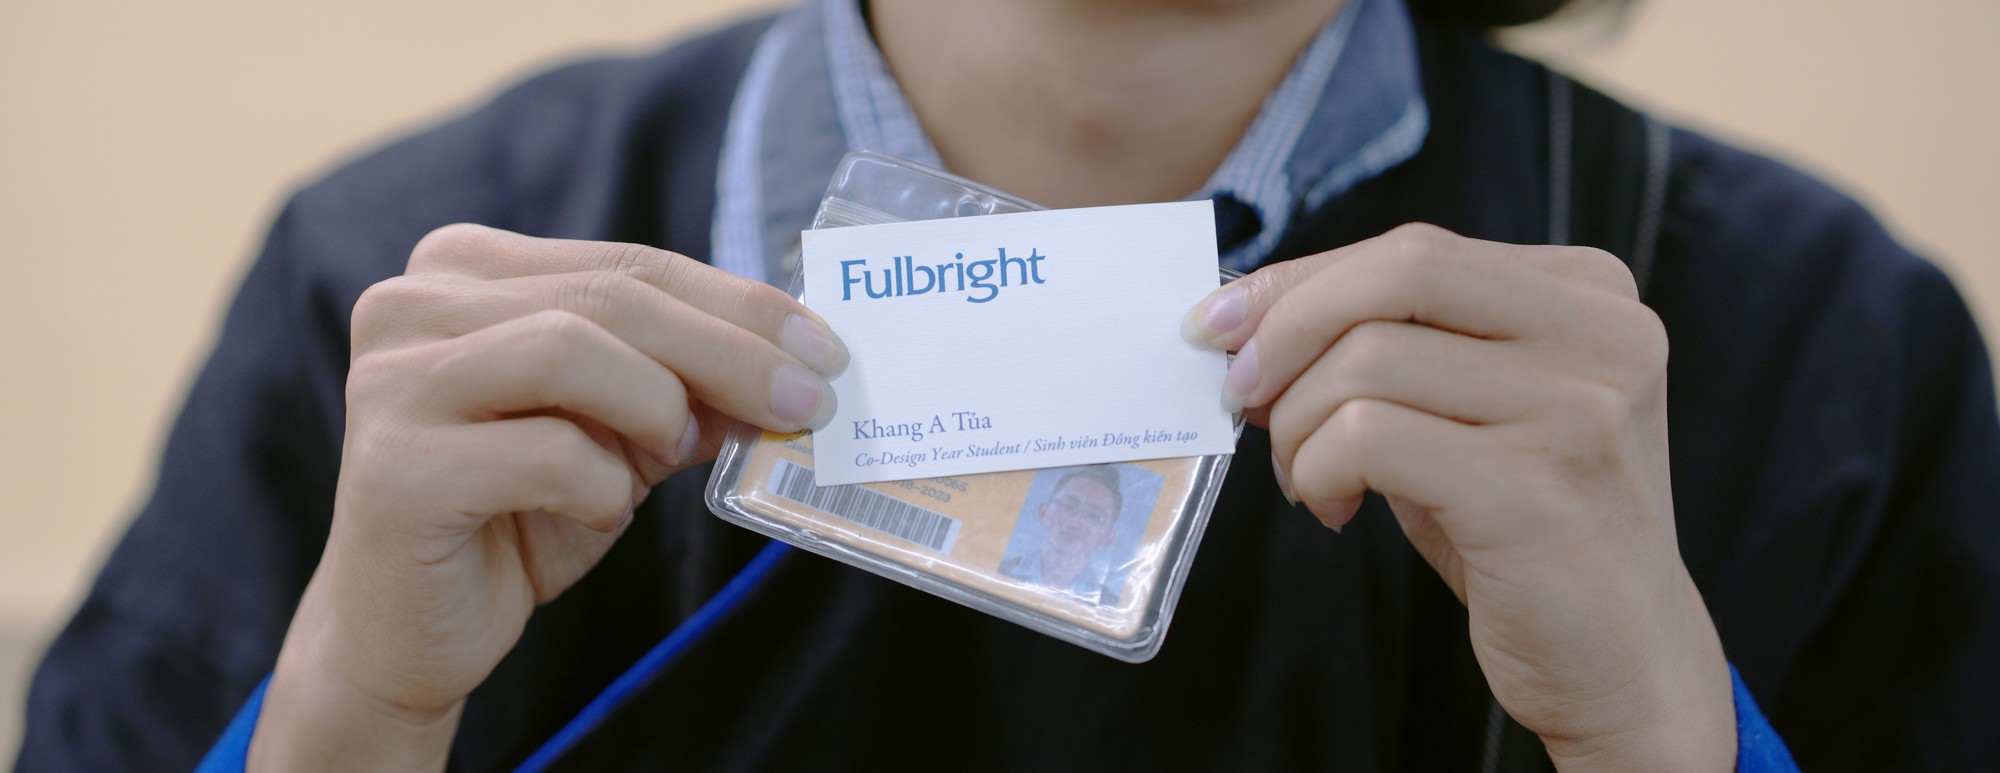 Con đường lạ lùng đến ĐH danh giá Fulbright của chàng trai người Mông dám bỏ ĐH Bách Khoa - Ảnh 17.